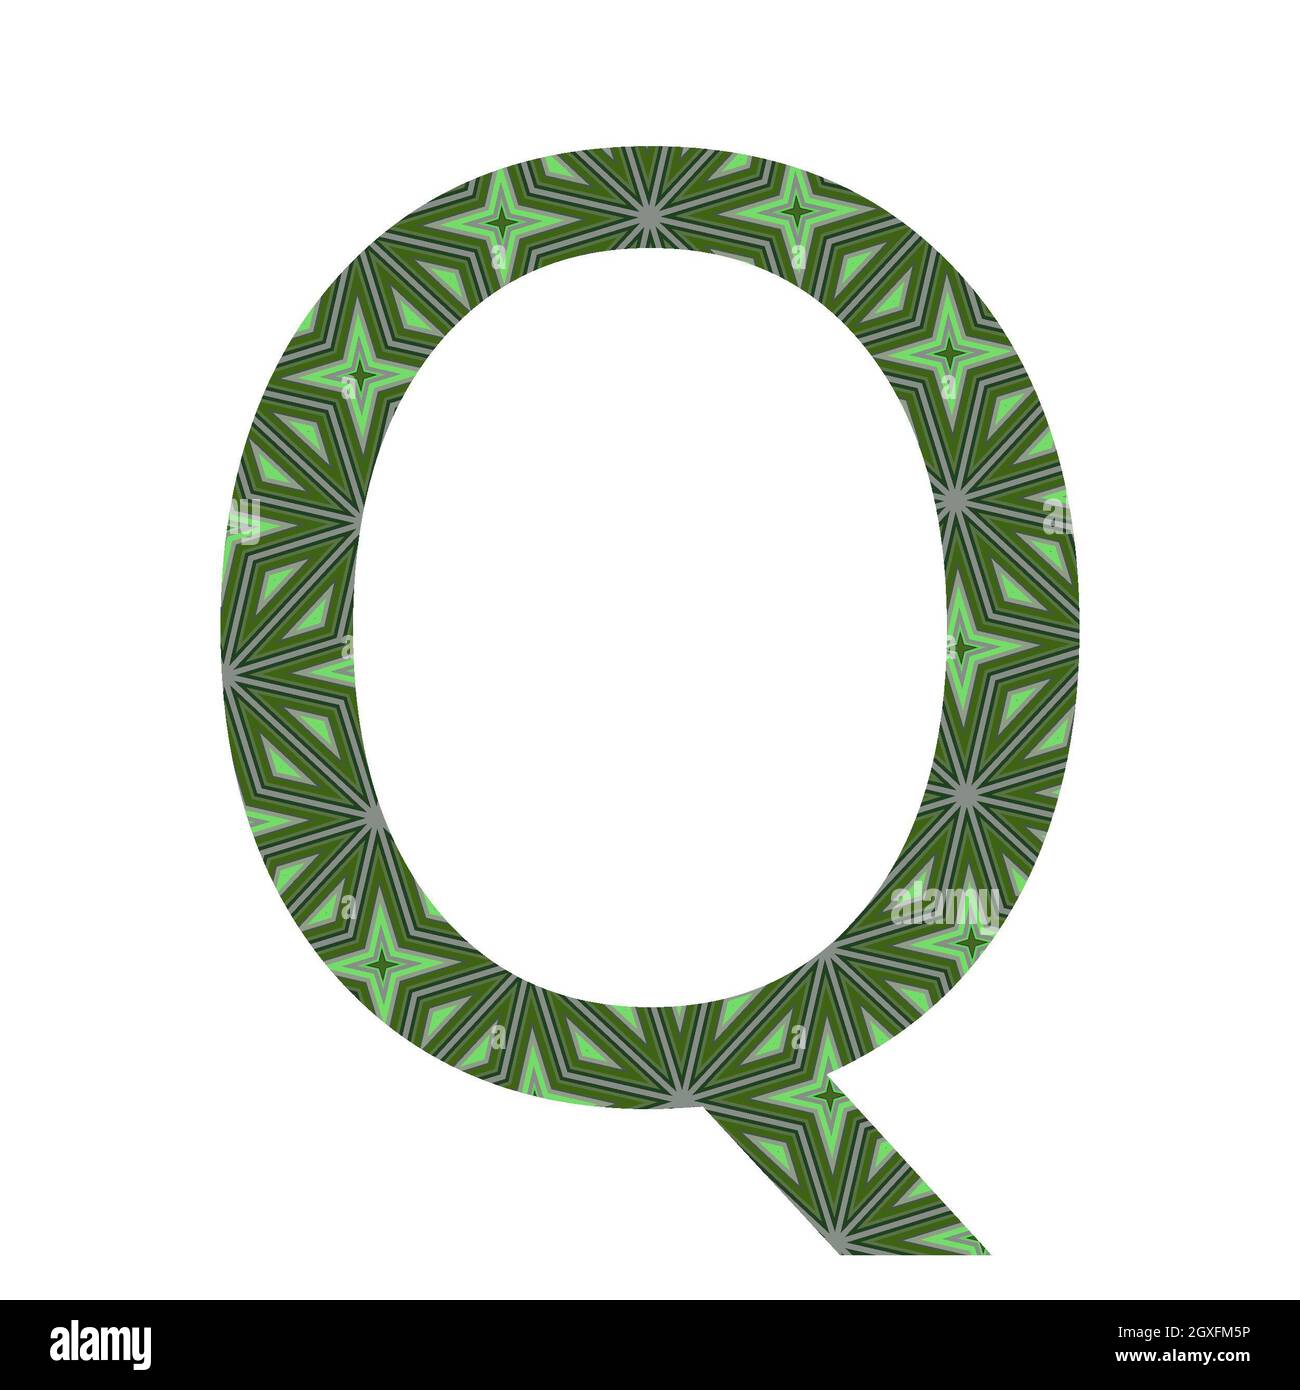 Lettera Q dell'alfabeto realizzato con un motivo di stelle verdi, isolato su sfondo bianco Foto Stock